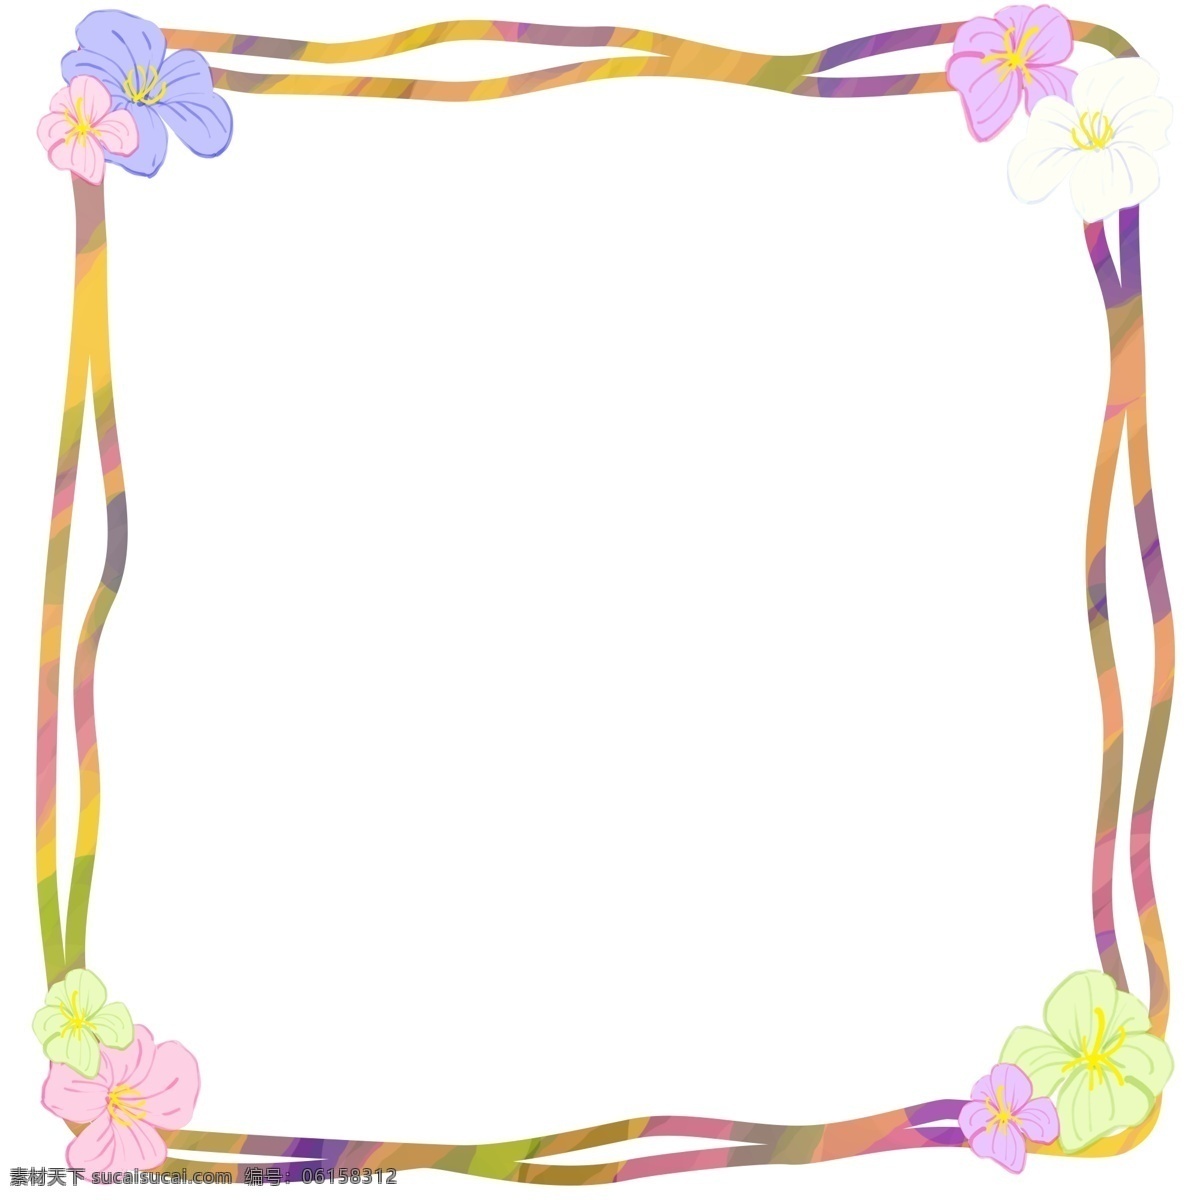 手绘 四角 花 框框 插画 紫色的框框 卡通边框 手绘插画 边框插画 漂亮的边框 绽放的花朵 四角花边框